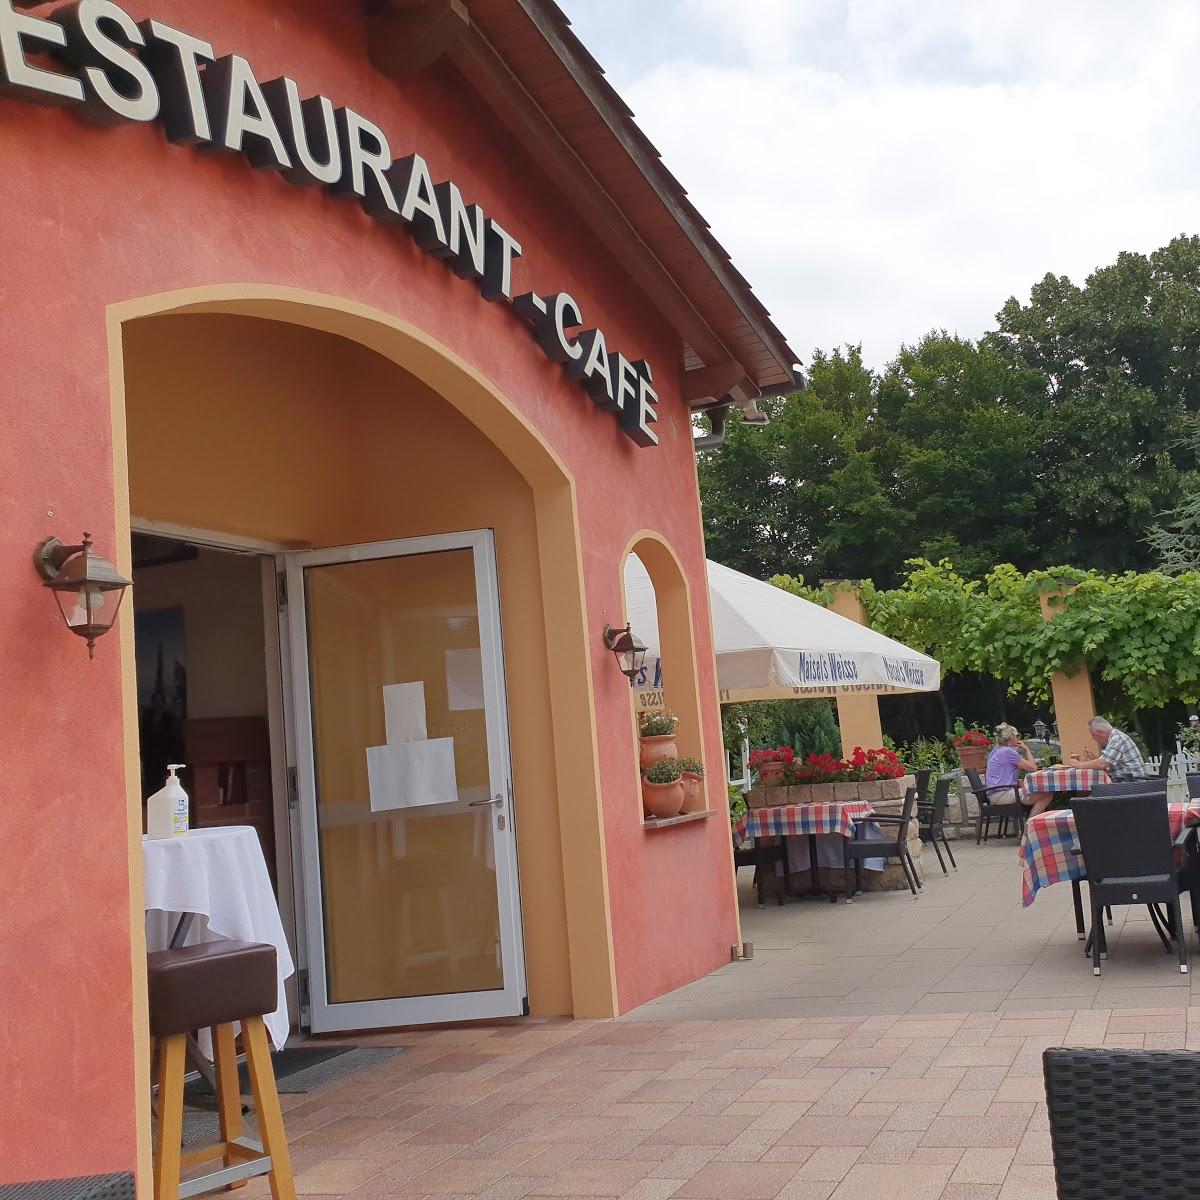 Restaurant "Altstadtcafè & Pension" in  Havelberg